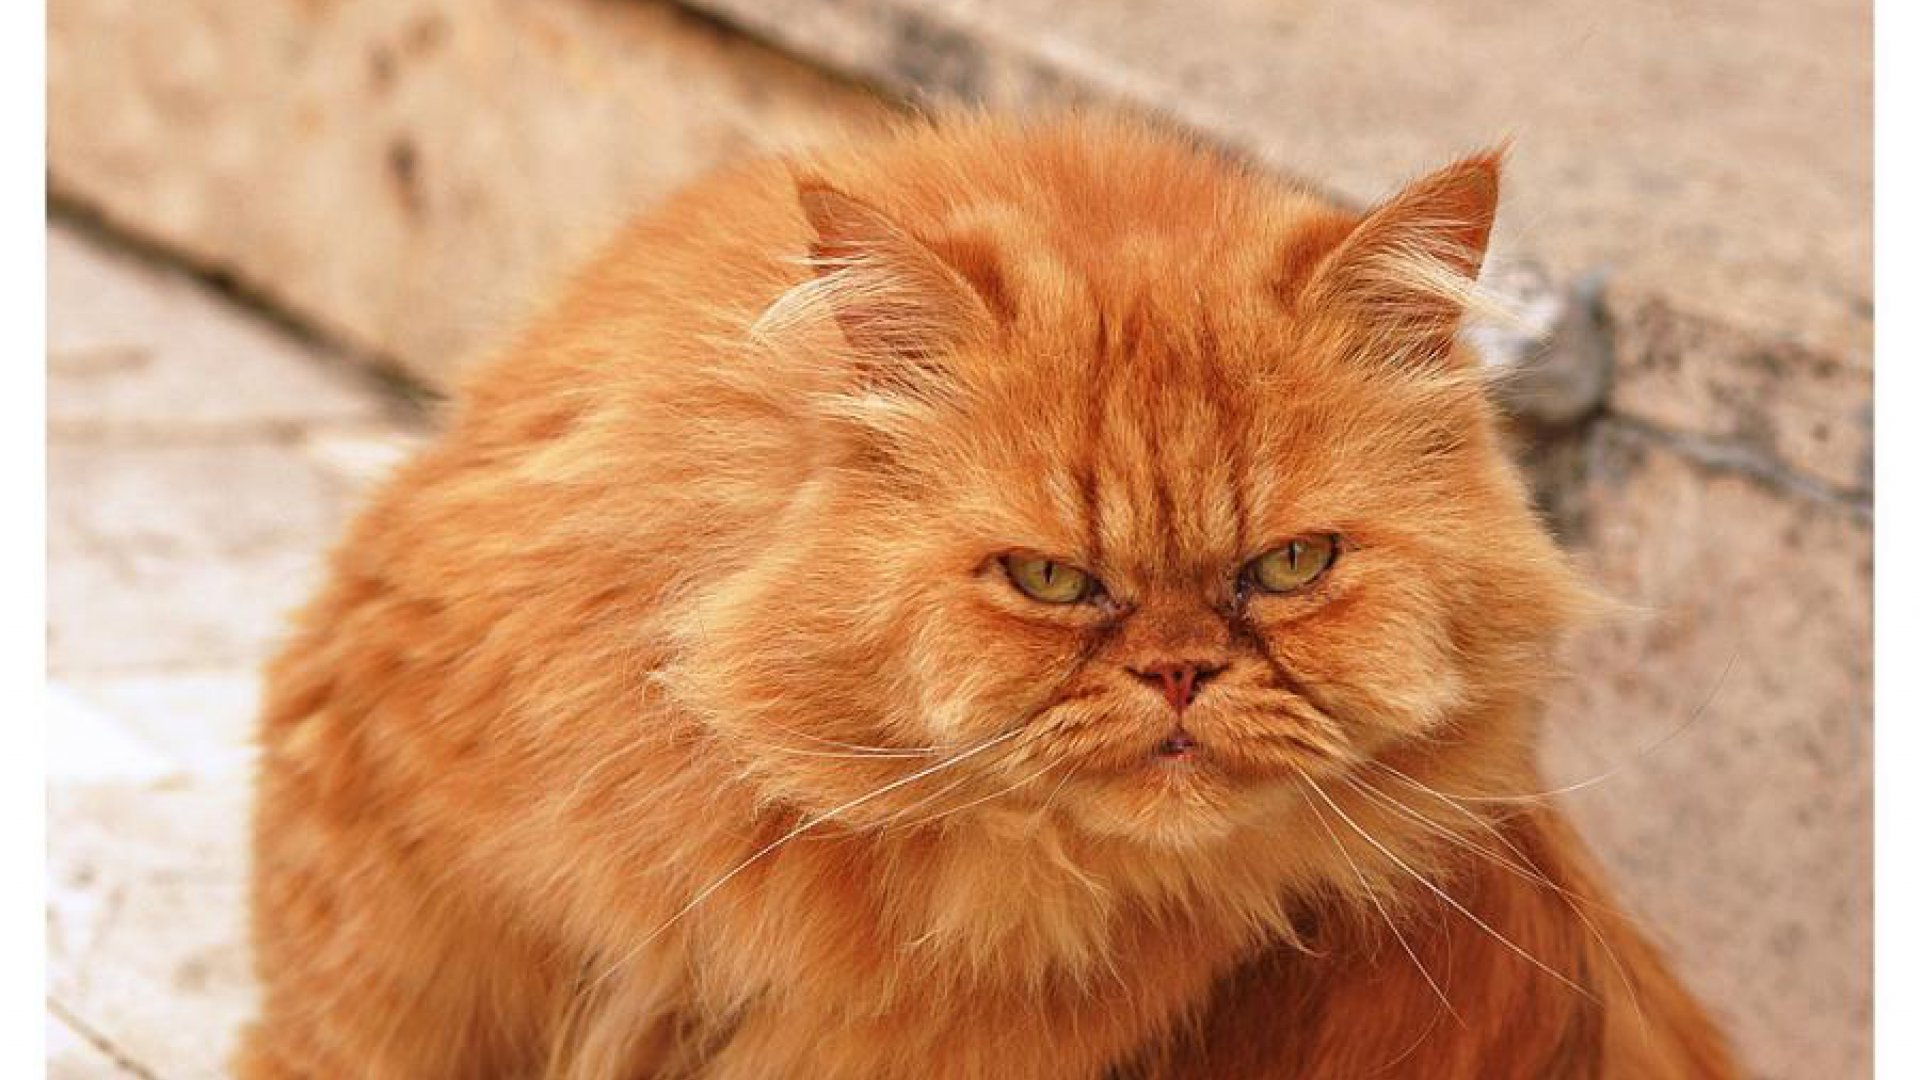 Ненавижу рыжих. Наглая рыжая морда. Наглый рыжий кот. Наглая рыжая морда кота. Наглые рыжие коты.